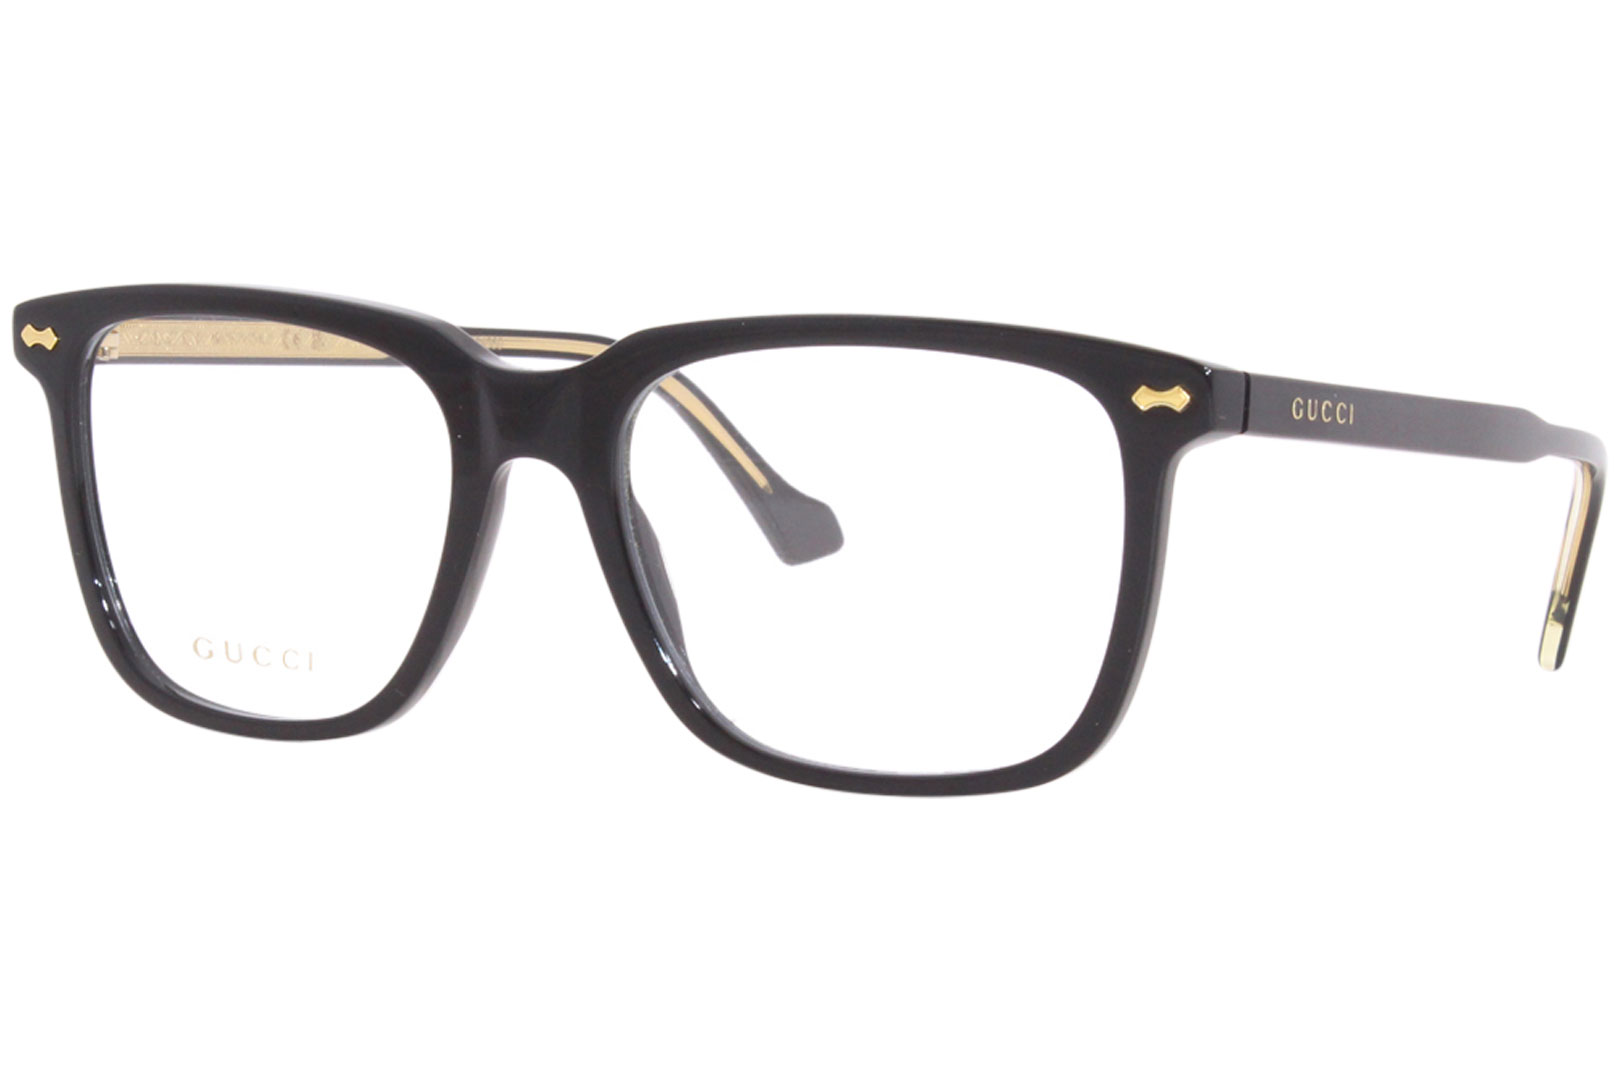 Gucci GG0737O 011 Eyeglasses Men's Black/Gold Full Rim Rectangle Shape ...